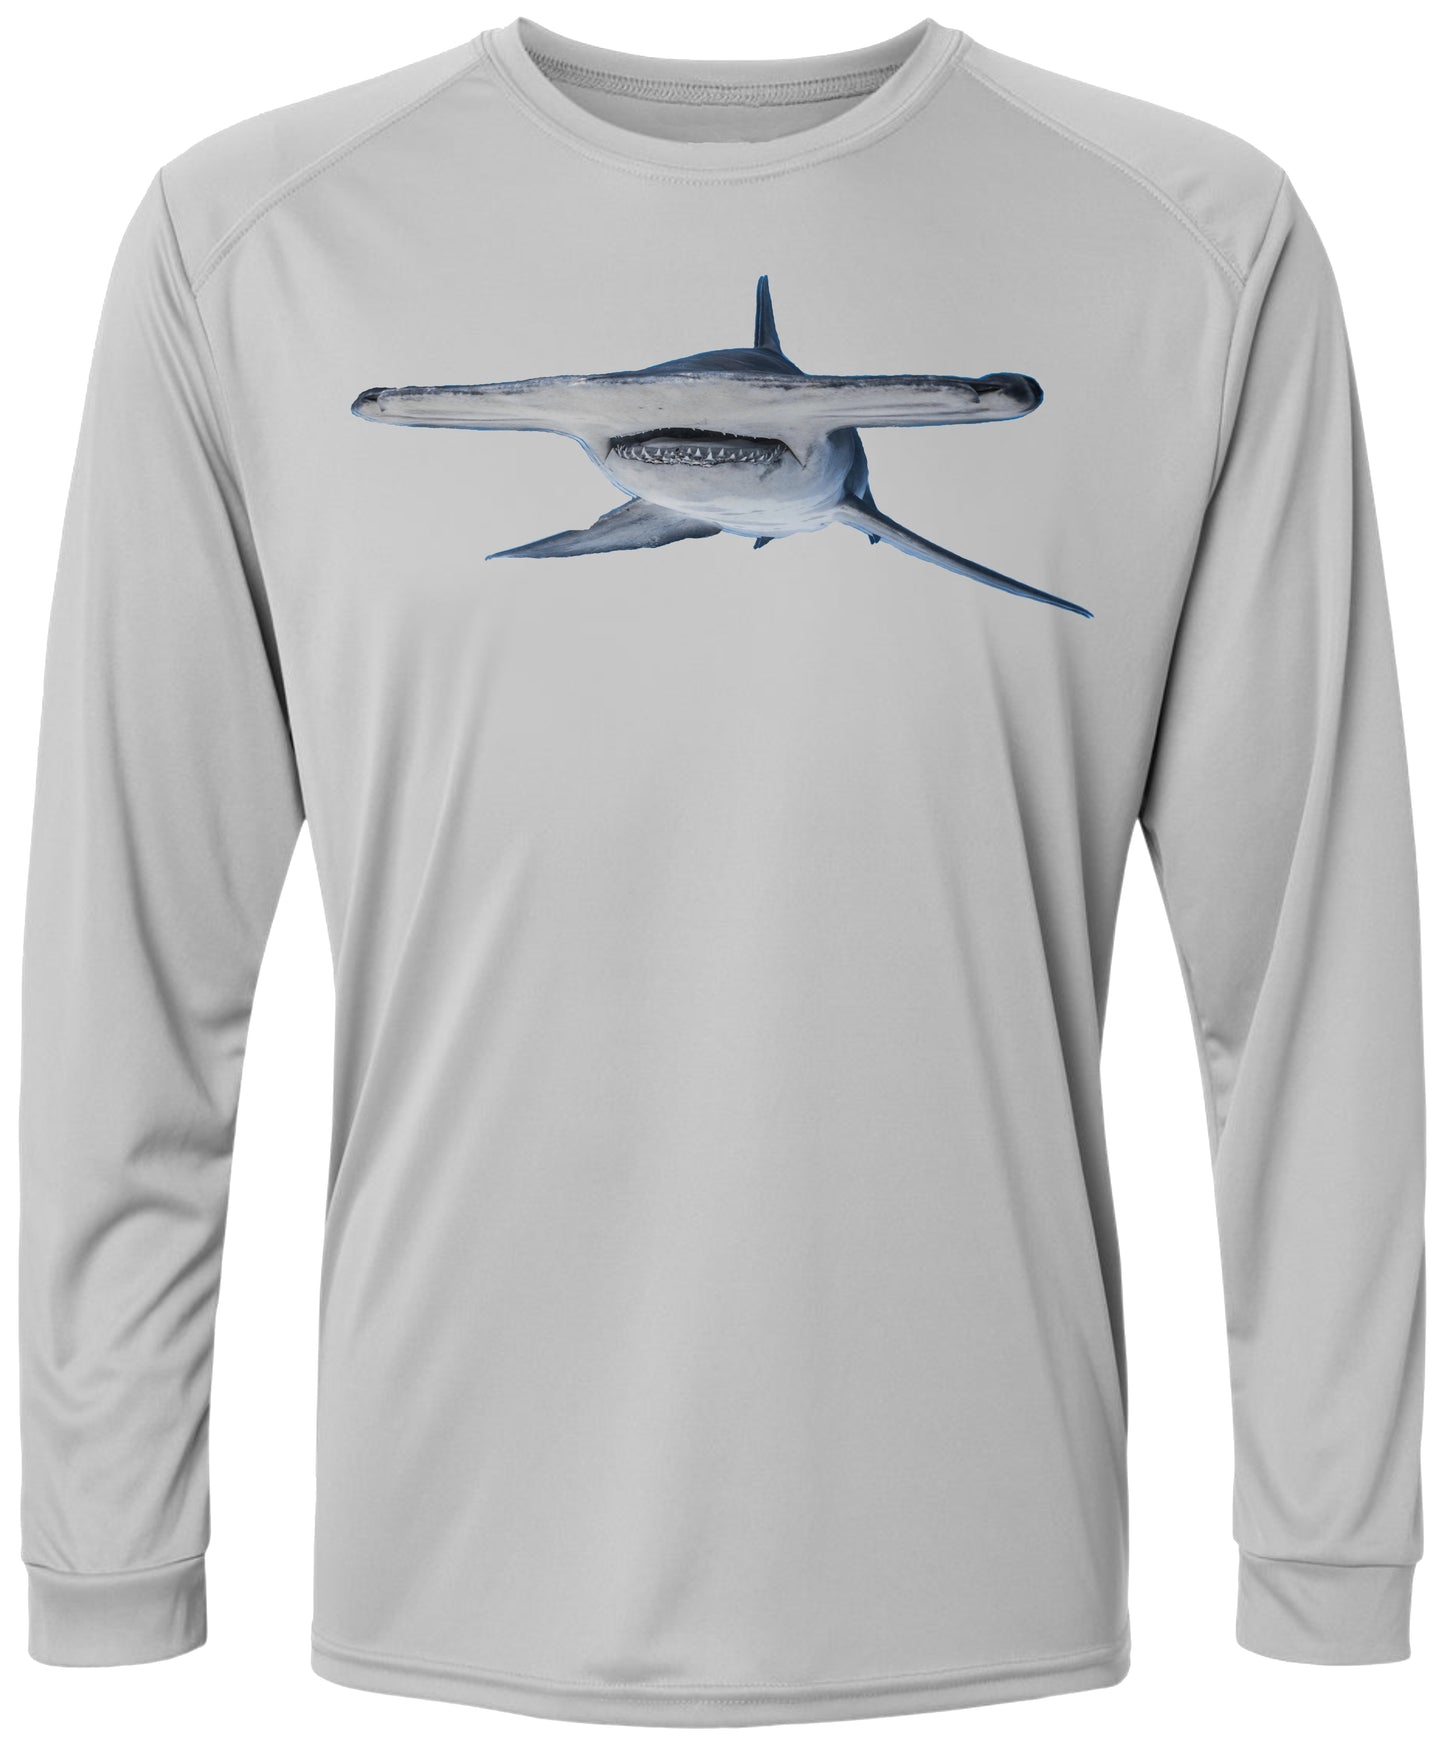 6 LM Hammerhead Shark Long Sleeve UPF 50+ Shirt Fishing Shirt Deep Sea Fishing Shark Fishing Lake Shirt Beach Shirt